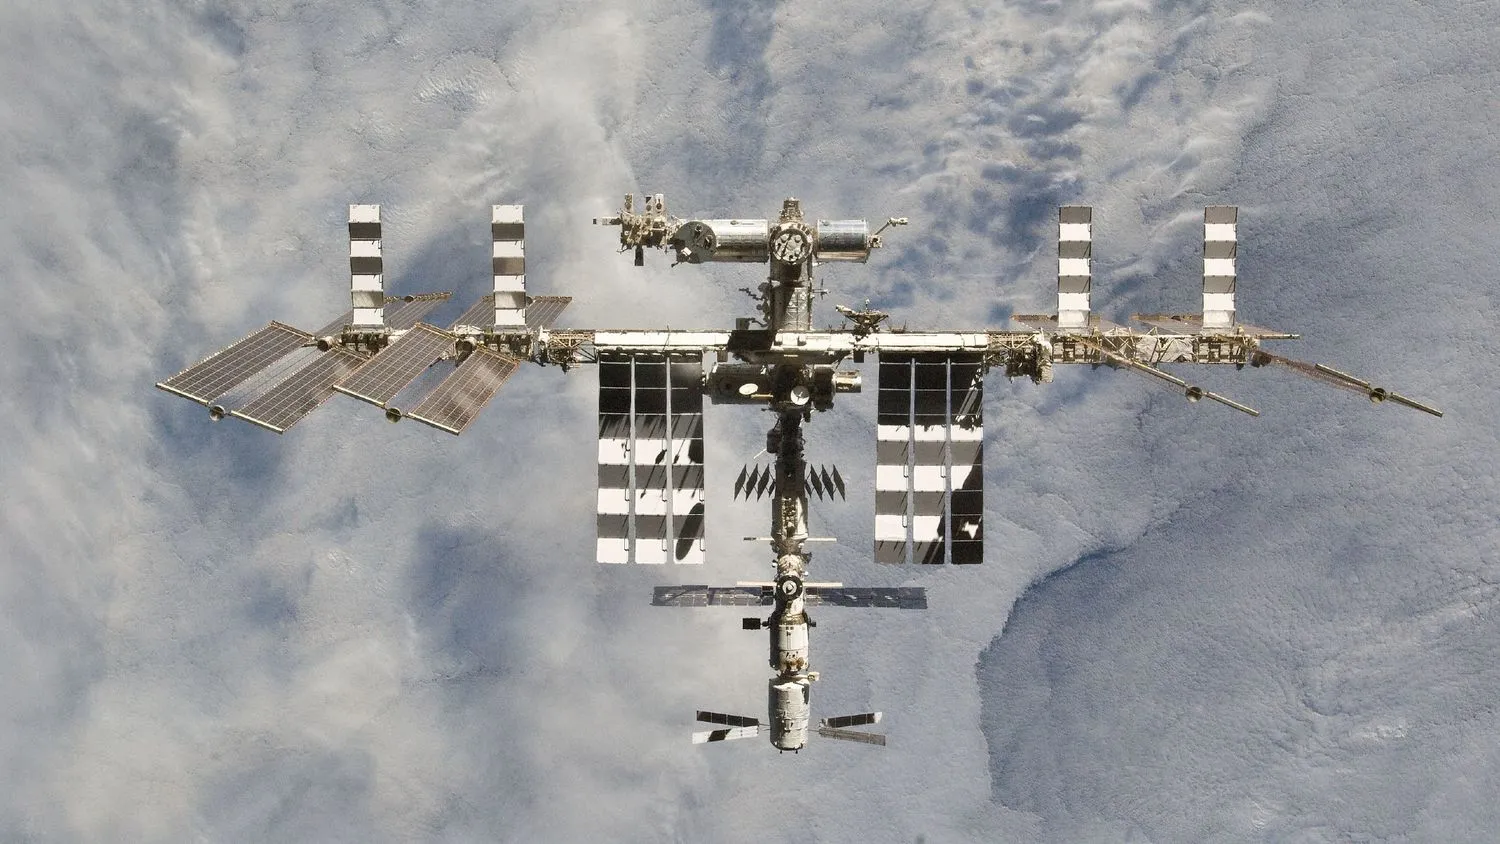 Mehr über den Artikel erfahren ISS könnte 18 Monate lang nach unten driften“, bevor sie von SpaceX in der Erdatmosphäre zerstört wird